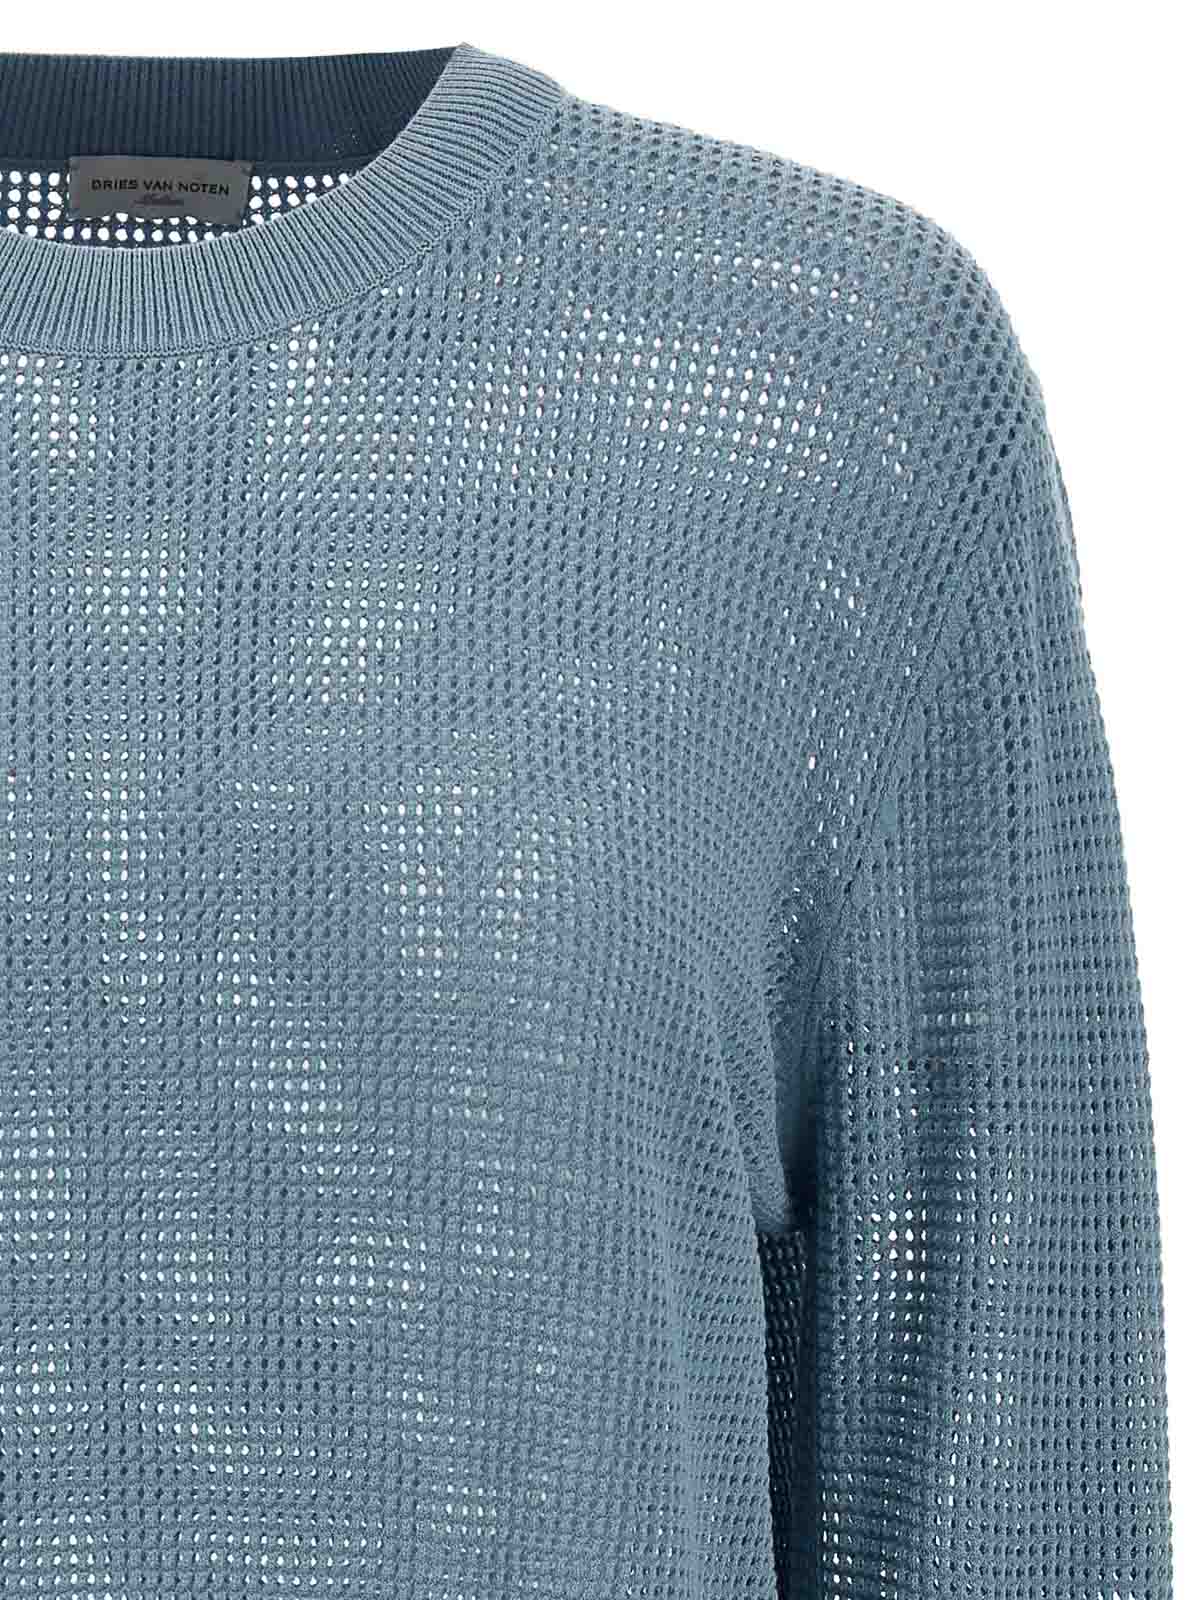 Shop Dries Van Noten Mixed Sweater In Azul Claro